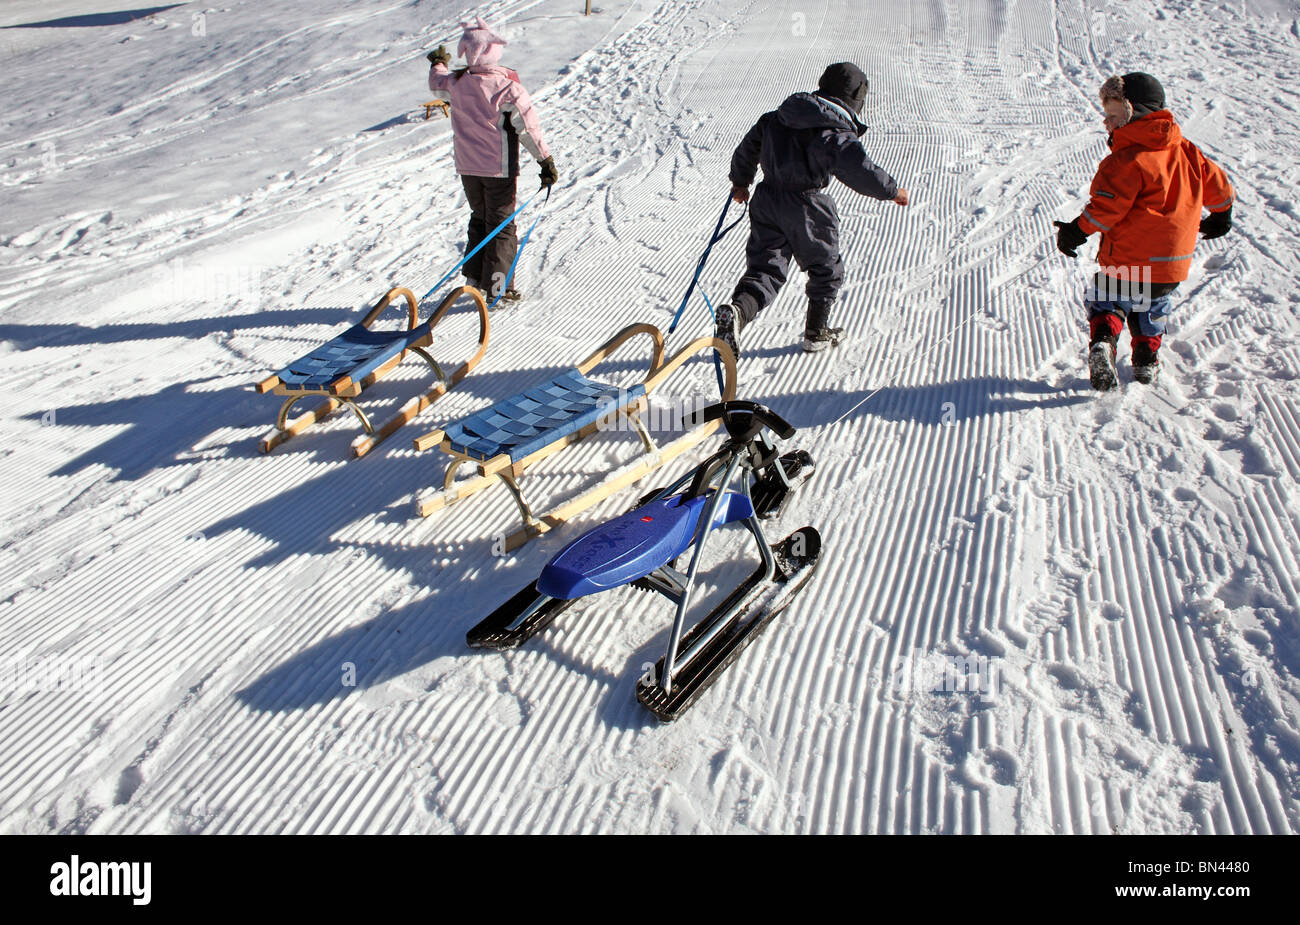 Les enfants tirant un traîneau sur la neige, Jerzens, Autriche Banque D'Images